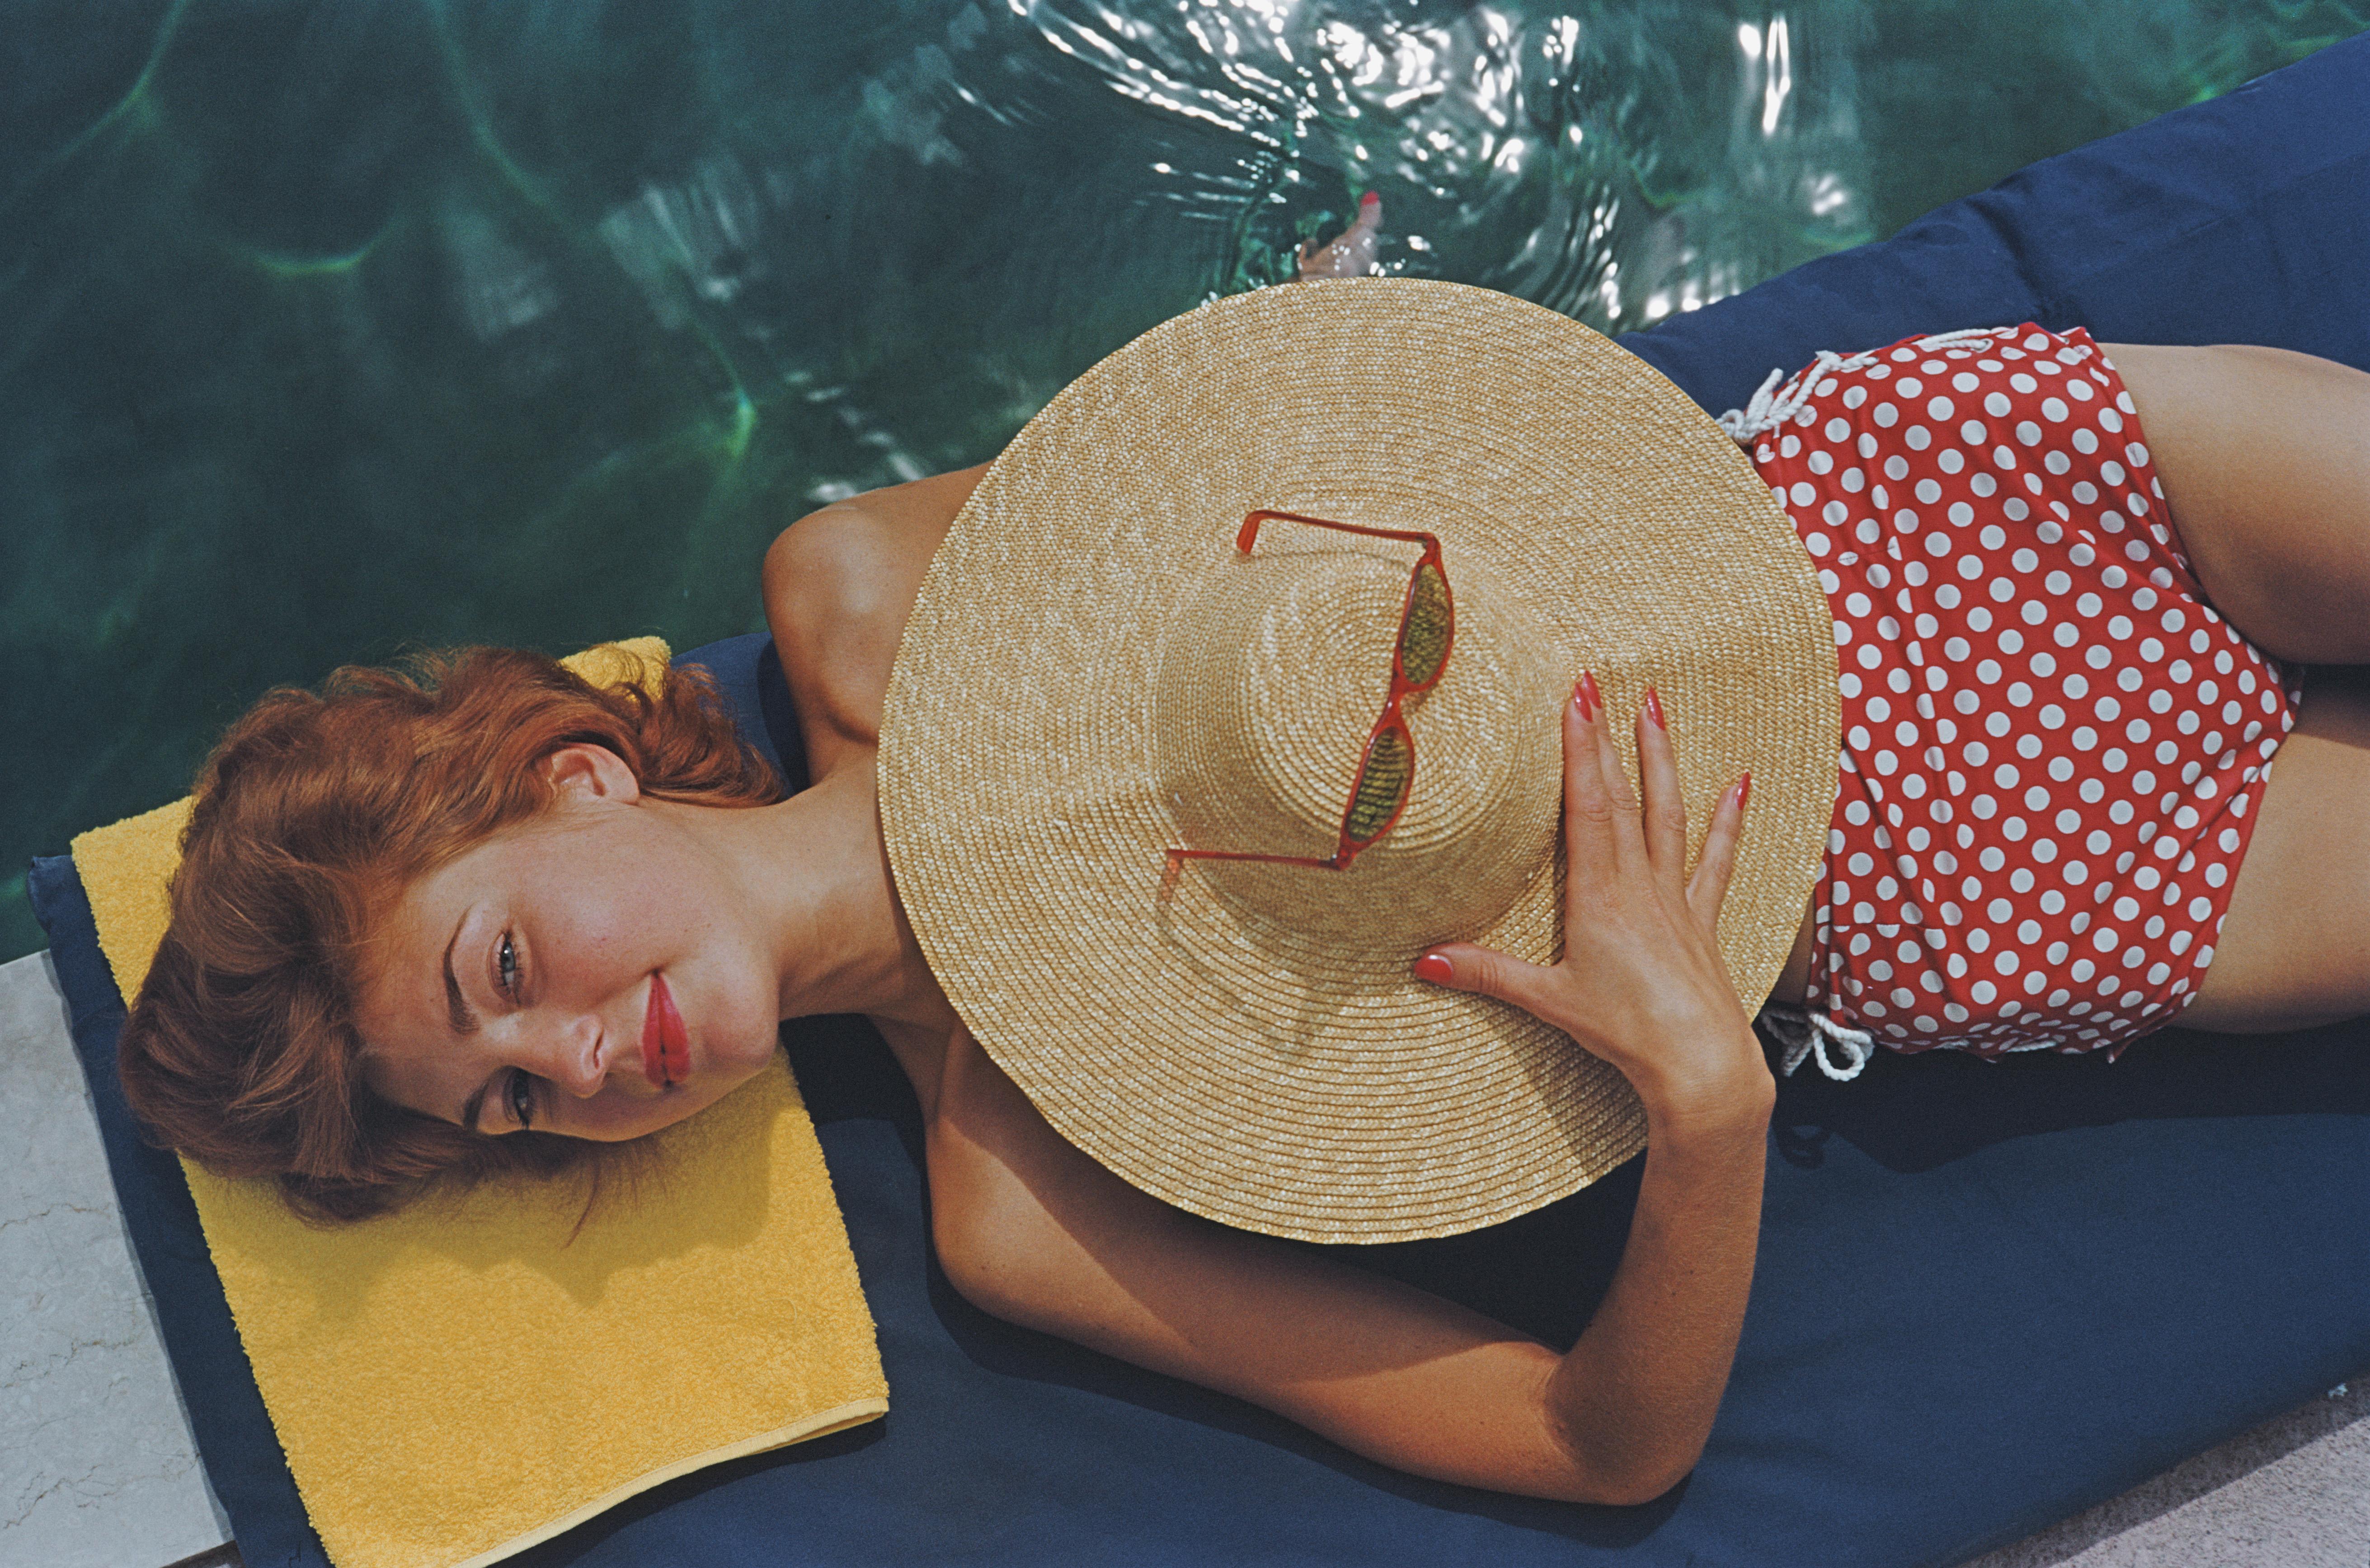 Slim Aarons
Bains de soleil à Burgenstock
1955
C imprimé
édition familiale de 150 exemplaires
Lilian Hanson, prenant un bain de soleil au bord d'une piscine du Brgenstock Resort dans le canton de Nidwald, en Suisse, 1955. 

Édition de 150